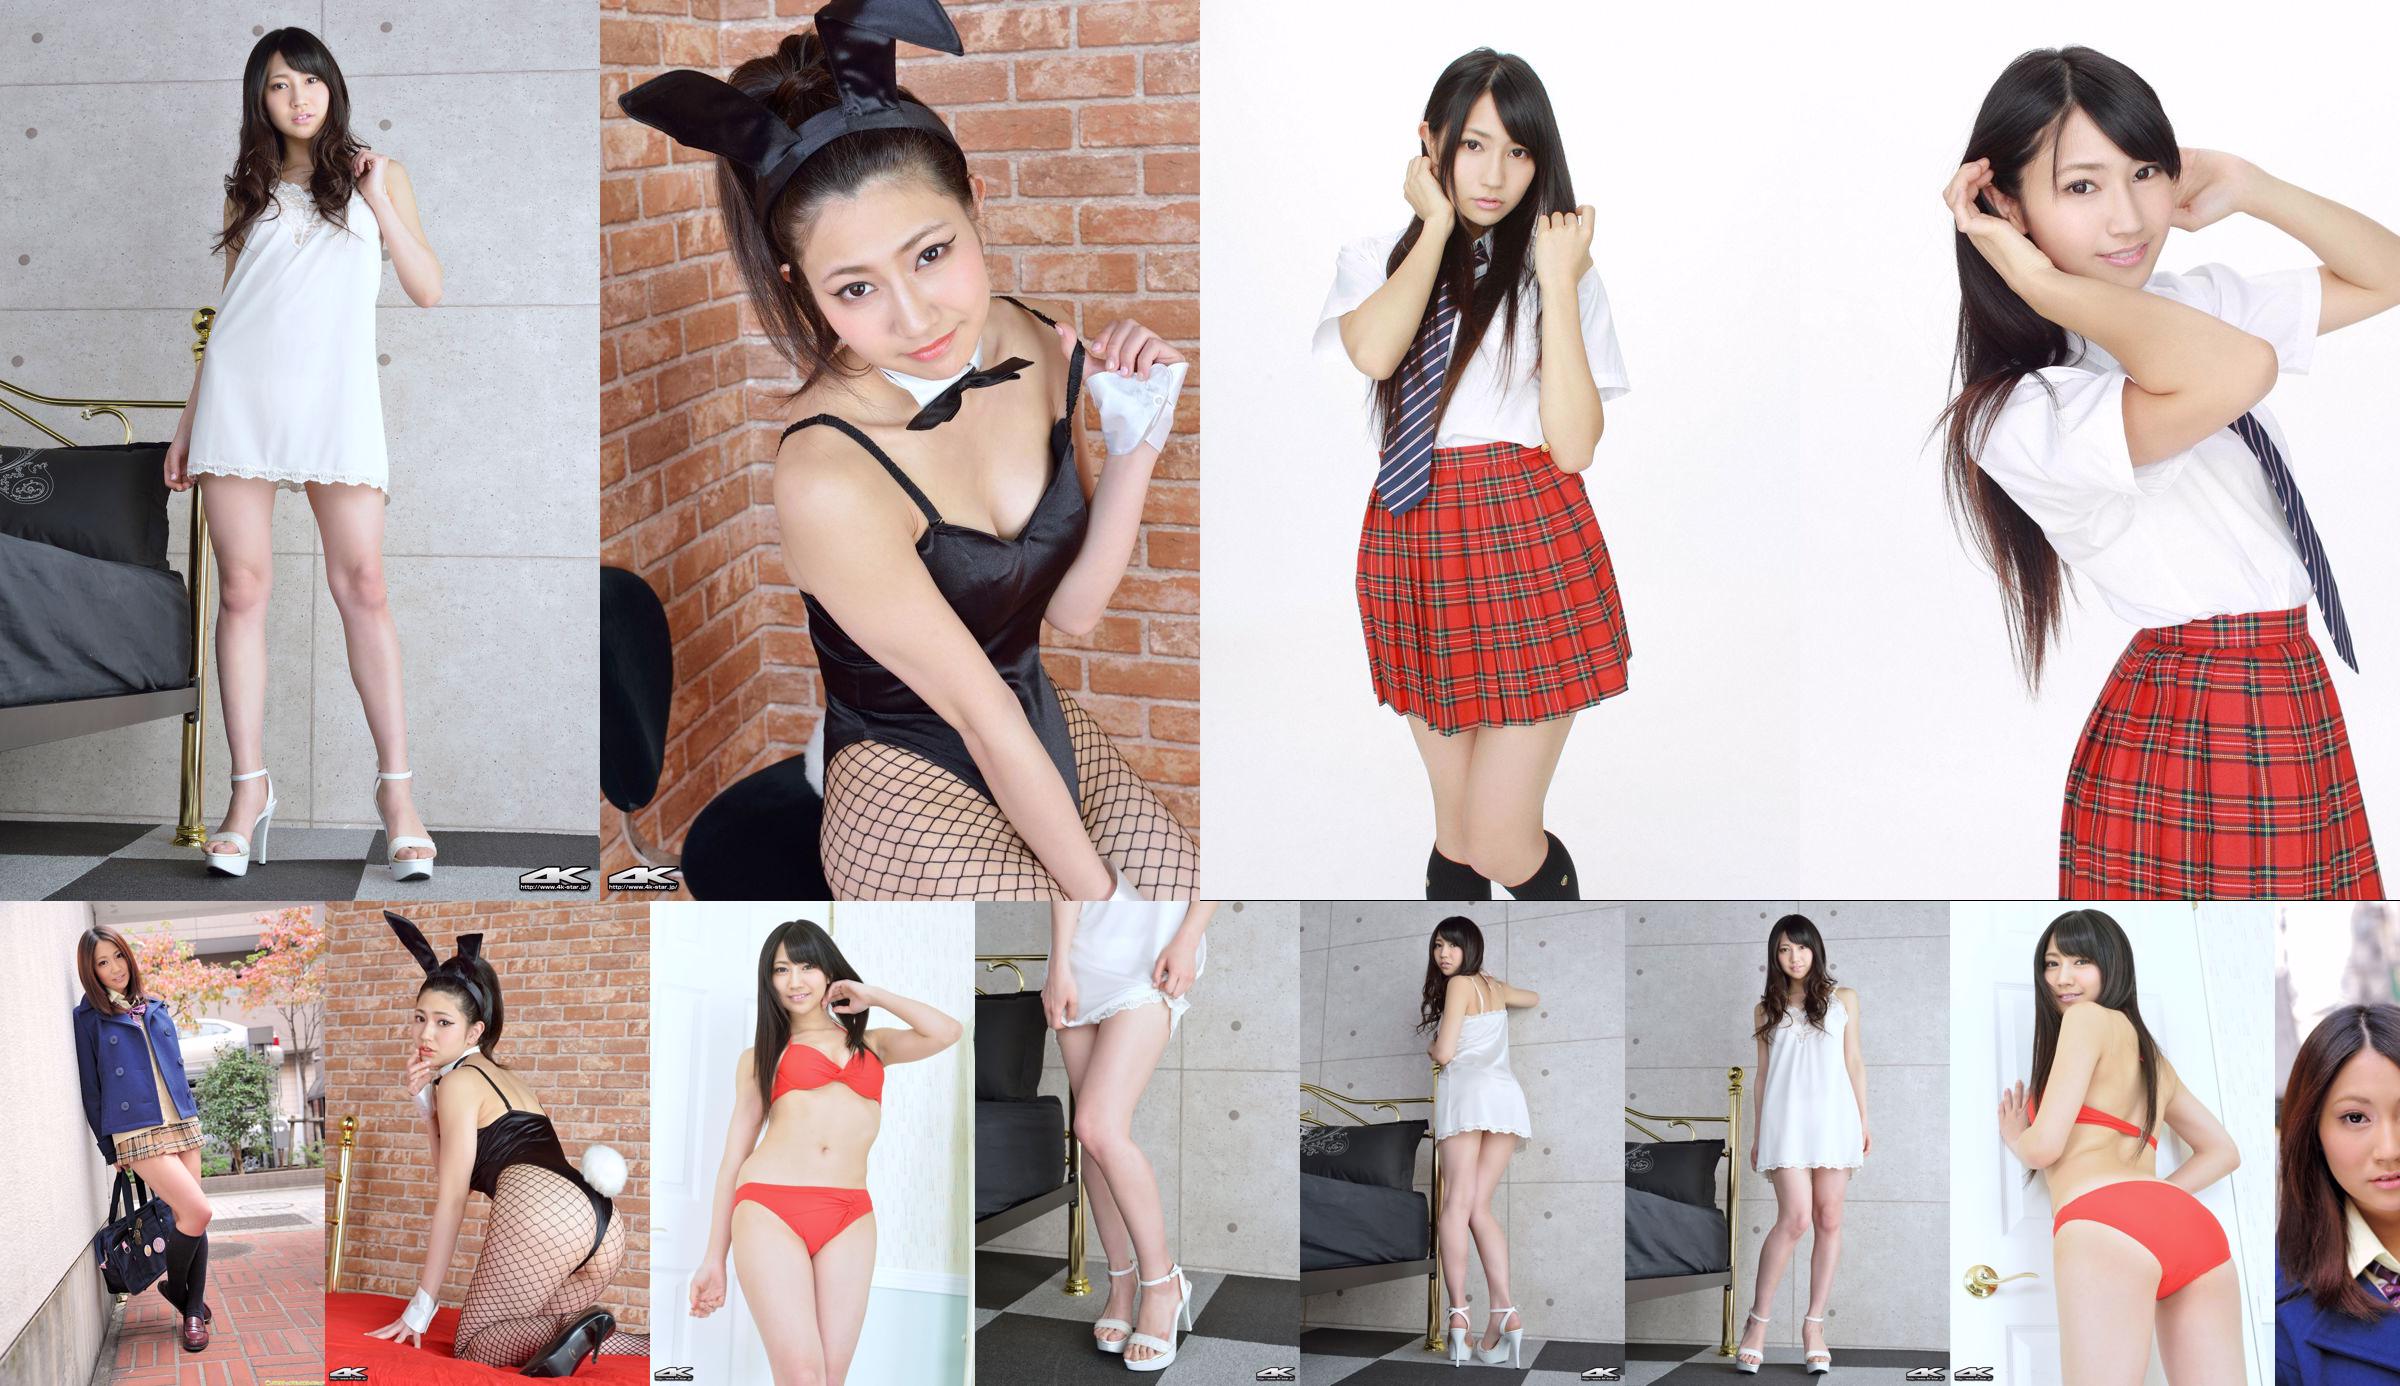 [DGC] NO.913 Aoi Kimura, the beautiful girl heaven in uniform No.fc2f24 Page 1